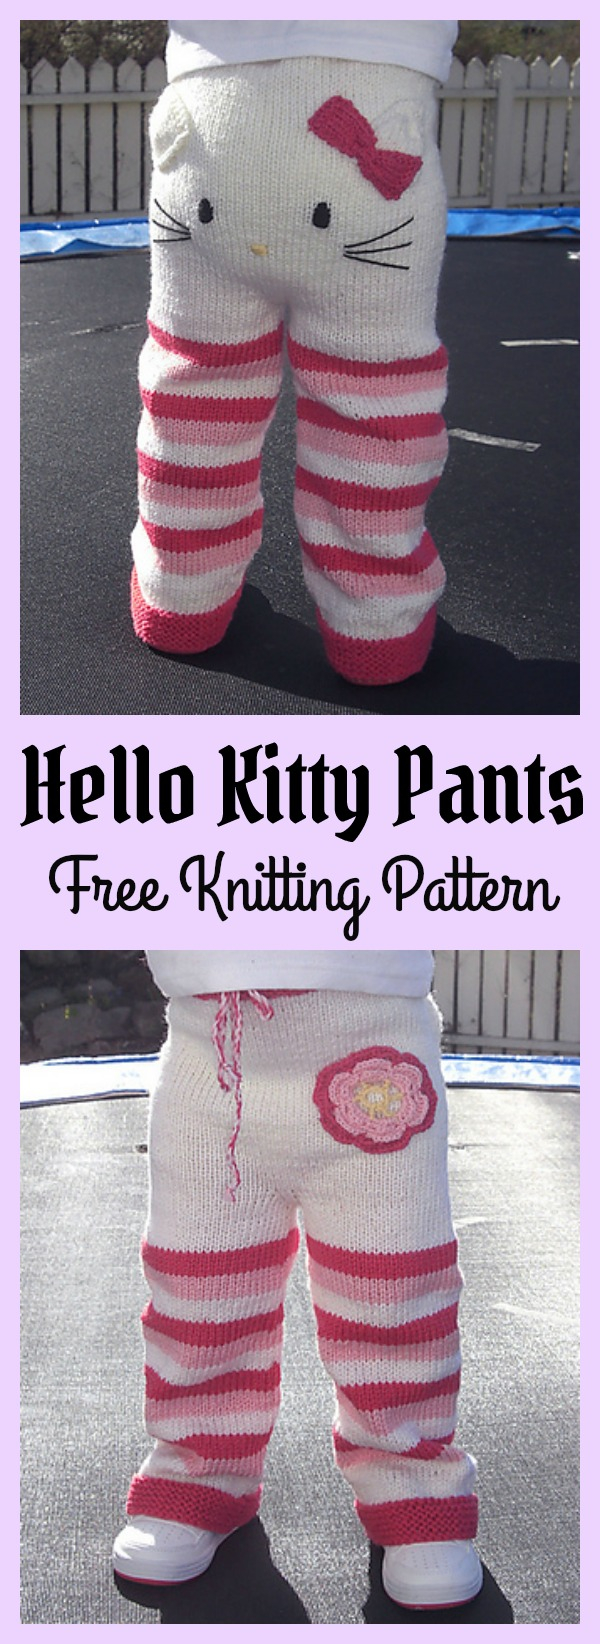 Hello Kitty Knitting Patterns Free Hello Kitty Pants Free Knitting Pattern